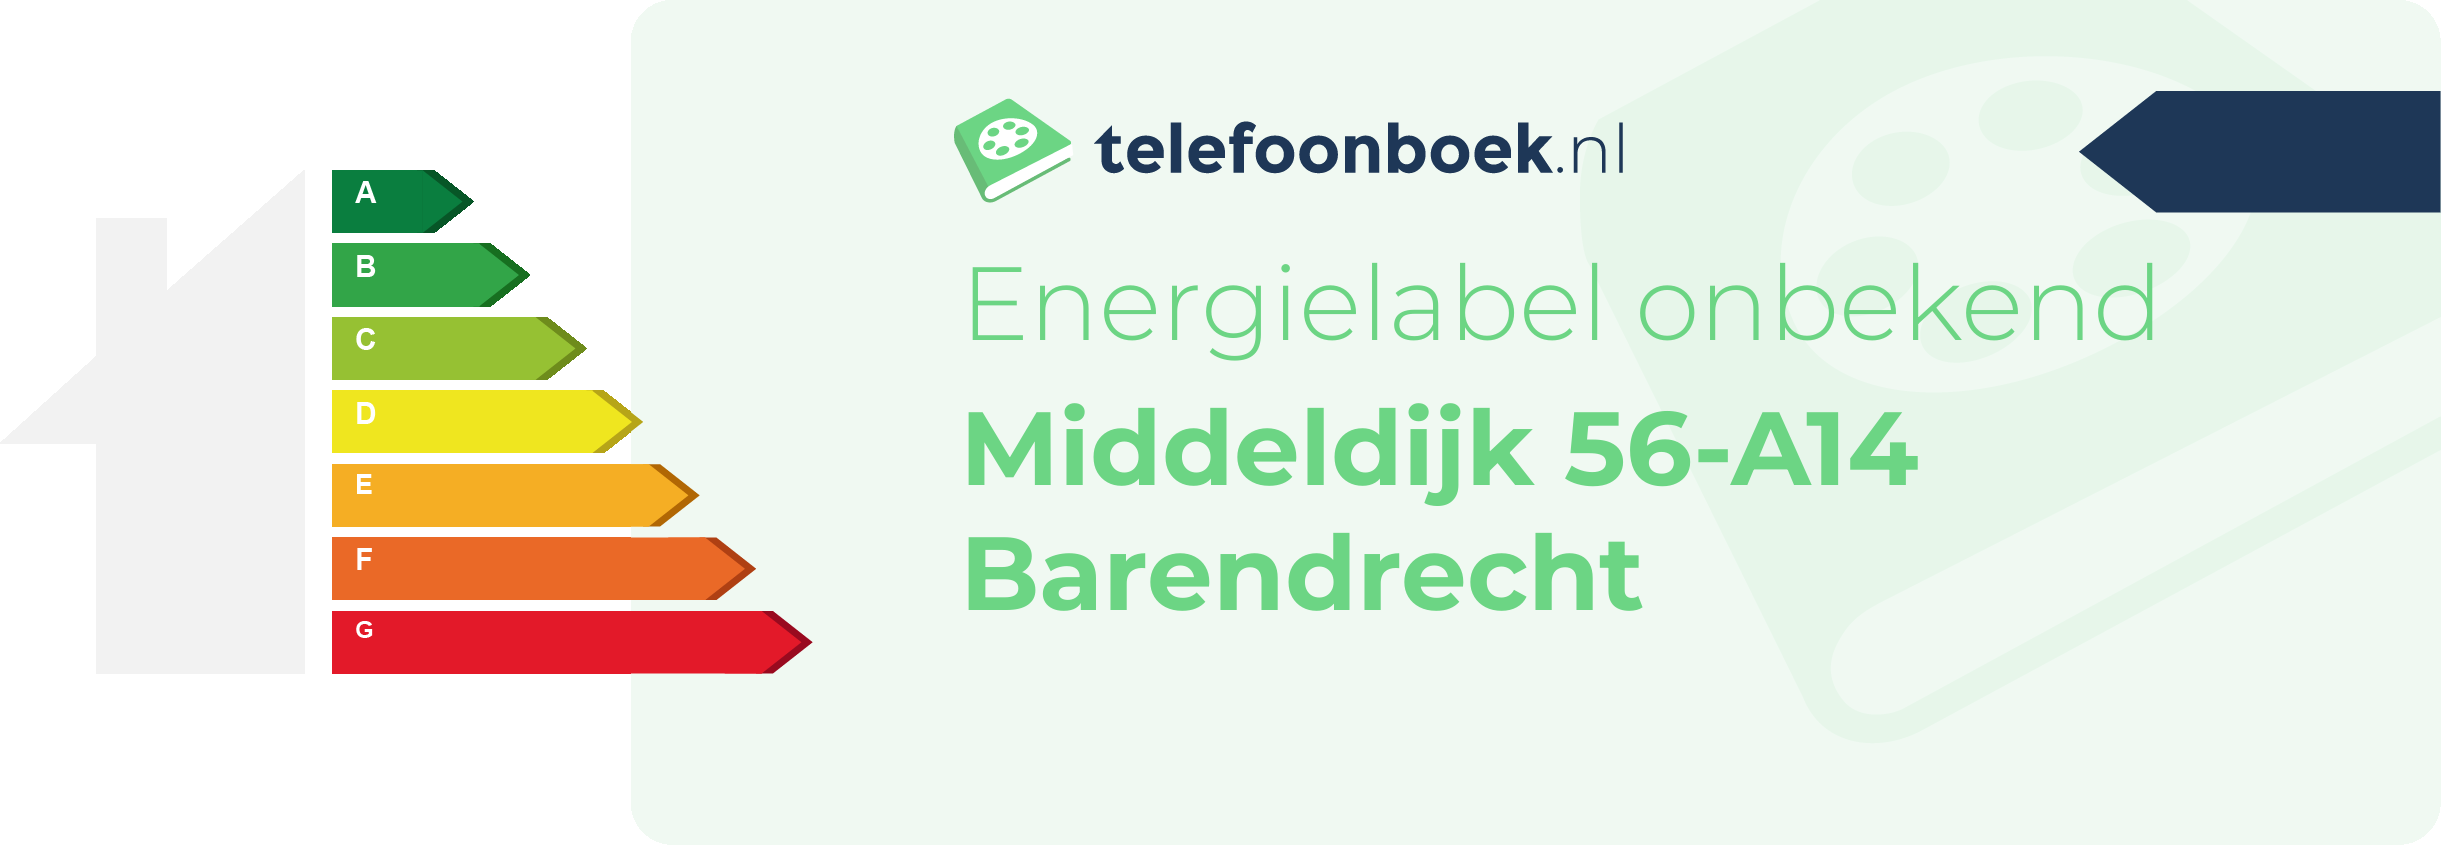 Energielabel Middeldijk 56-A14 Barendrecht